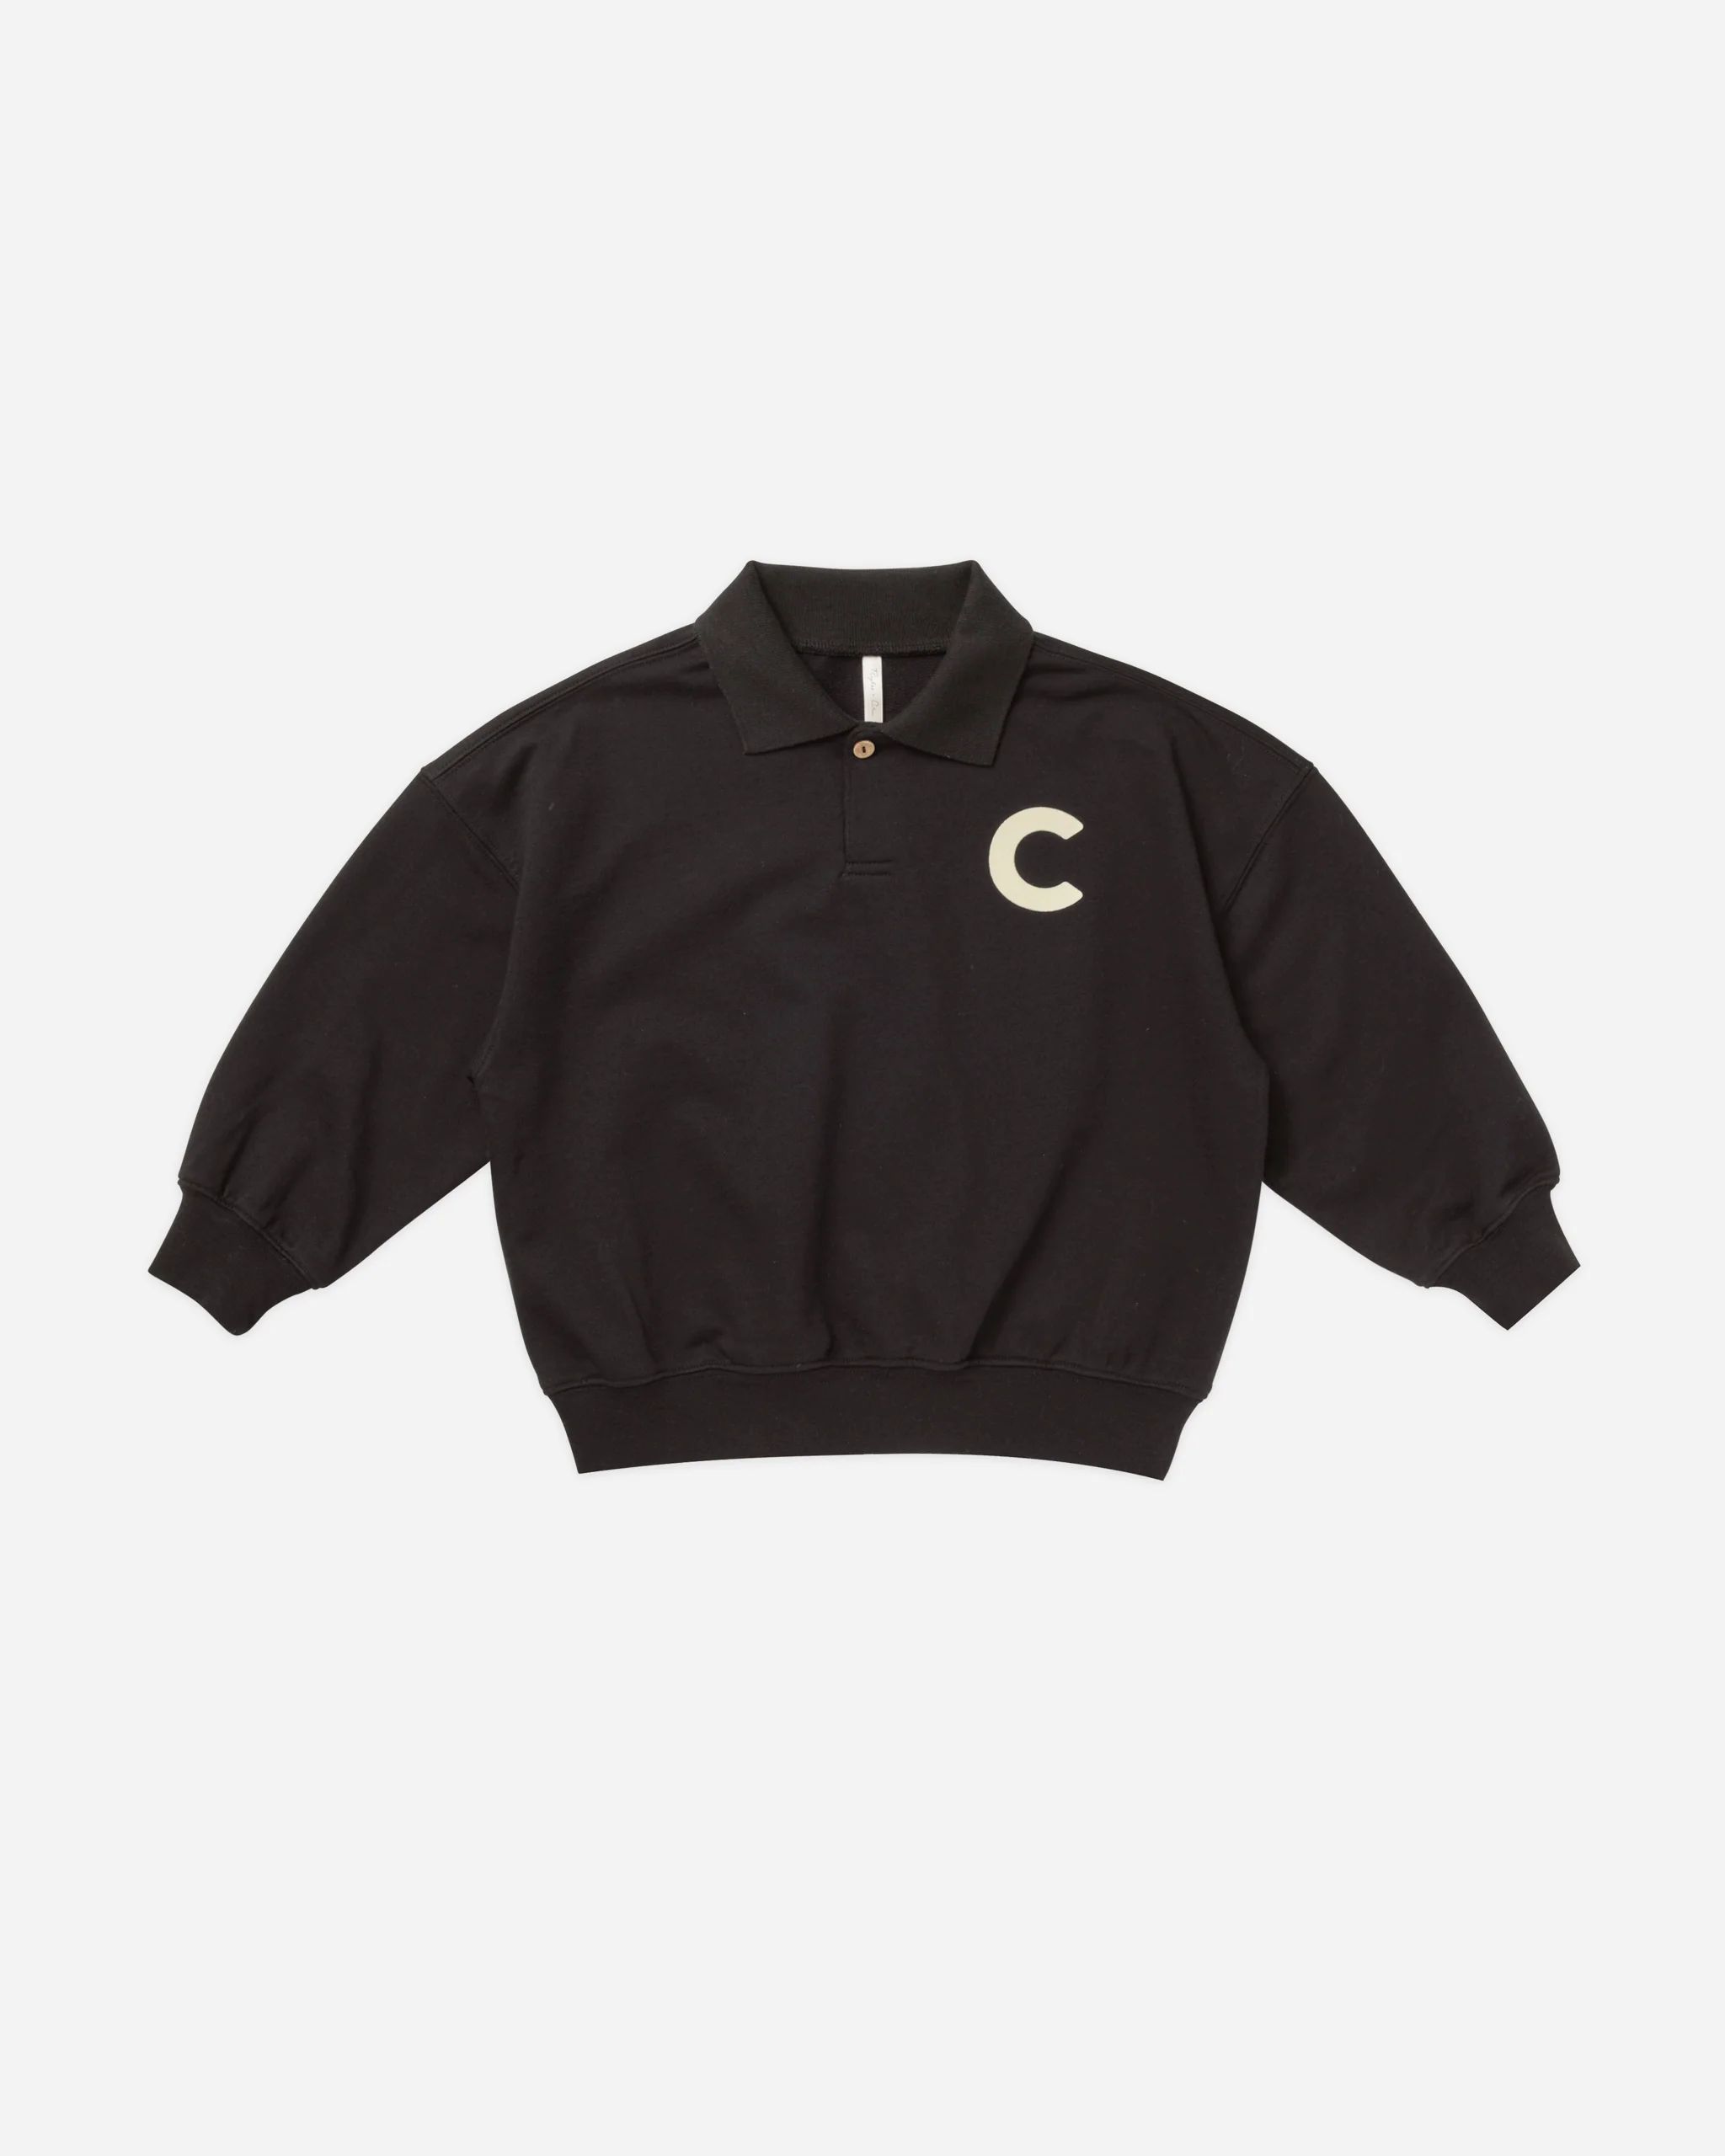 Collared Sweatshirt || Black | Rylee + Cru